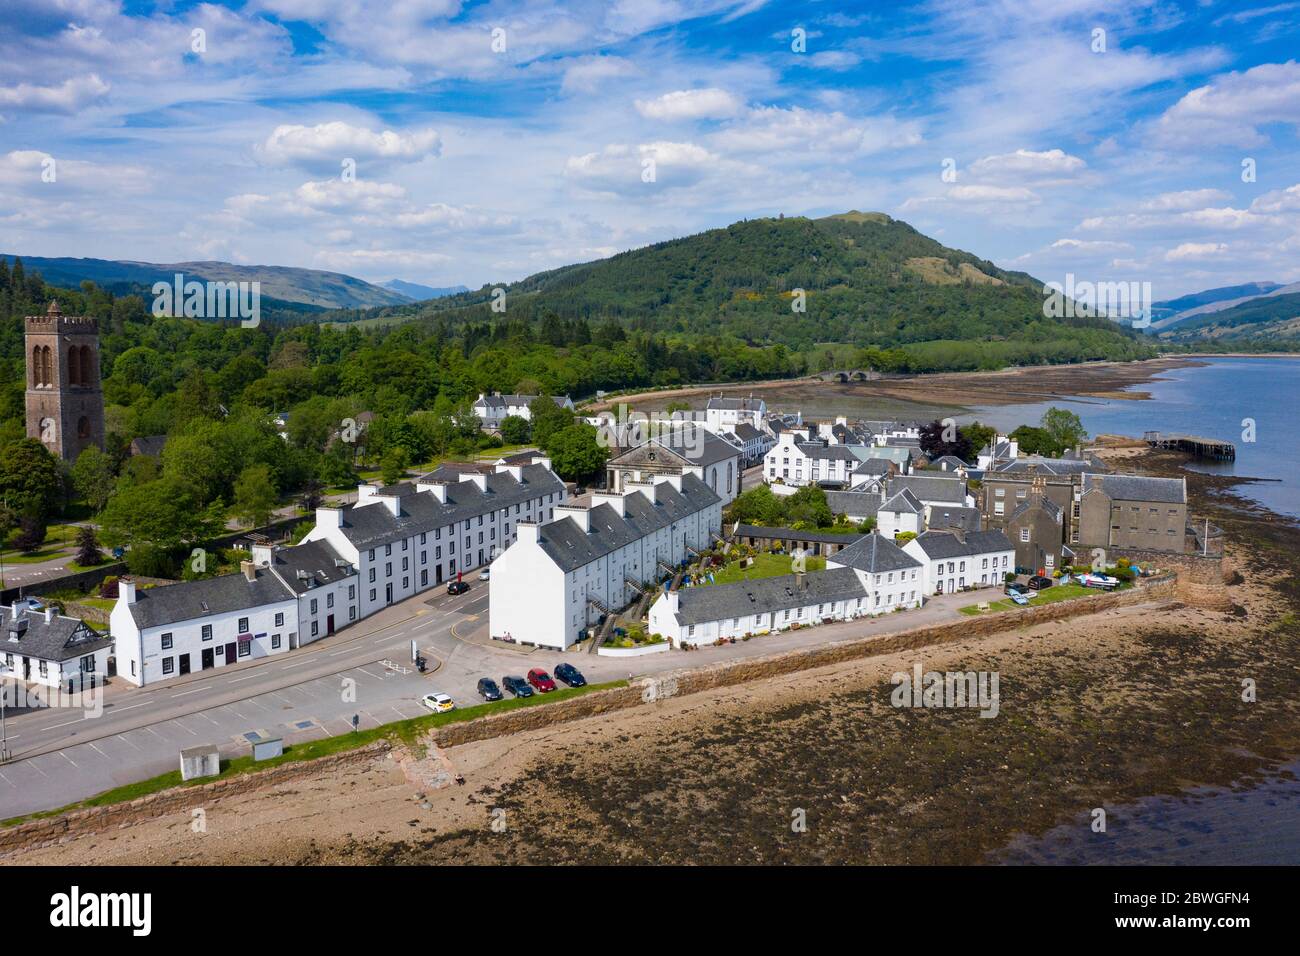 Vista aérea de la ciudad de Inveraray junto al lago Fyne en Argyll y Bute, Escocia, Reino Unido Foto de stock